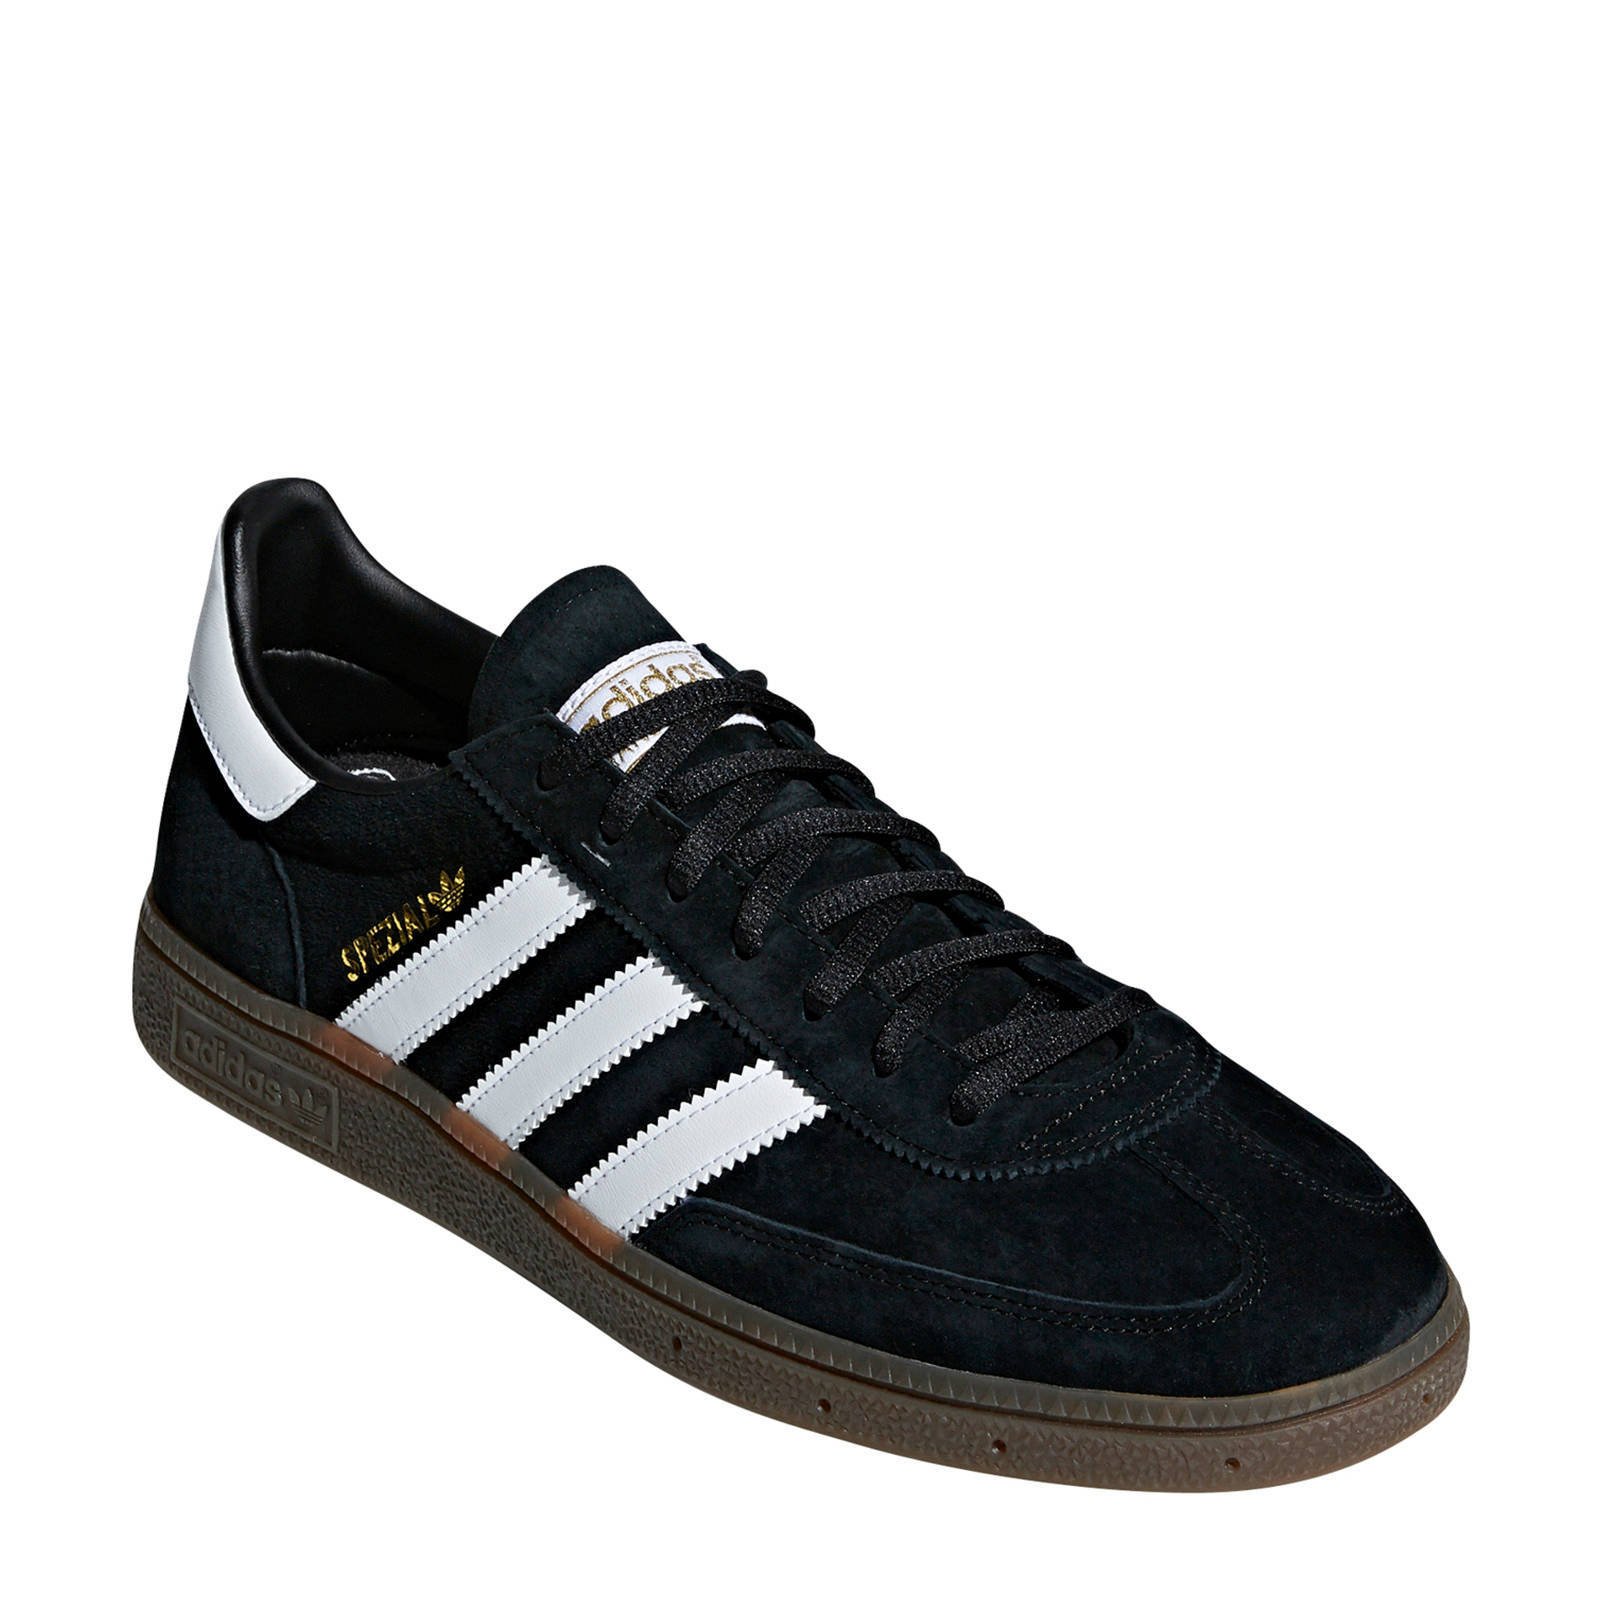 adidas Originals Handball Spezial Terrace sneakers zwart/wit ...